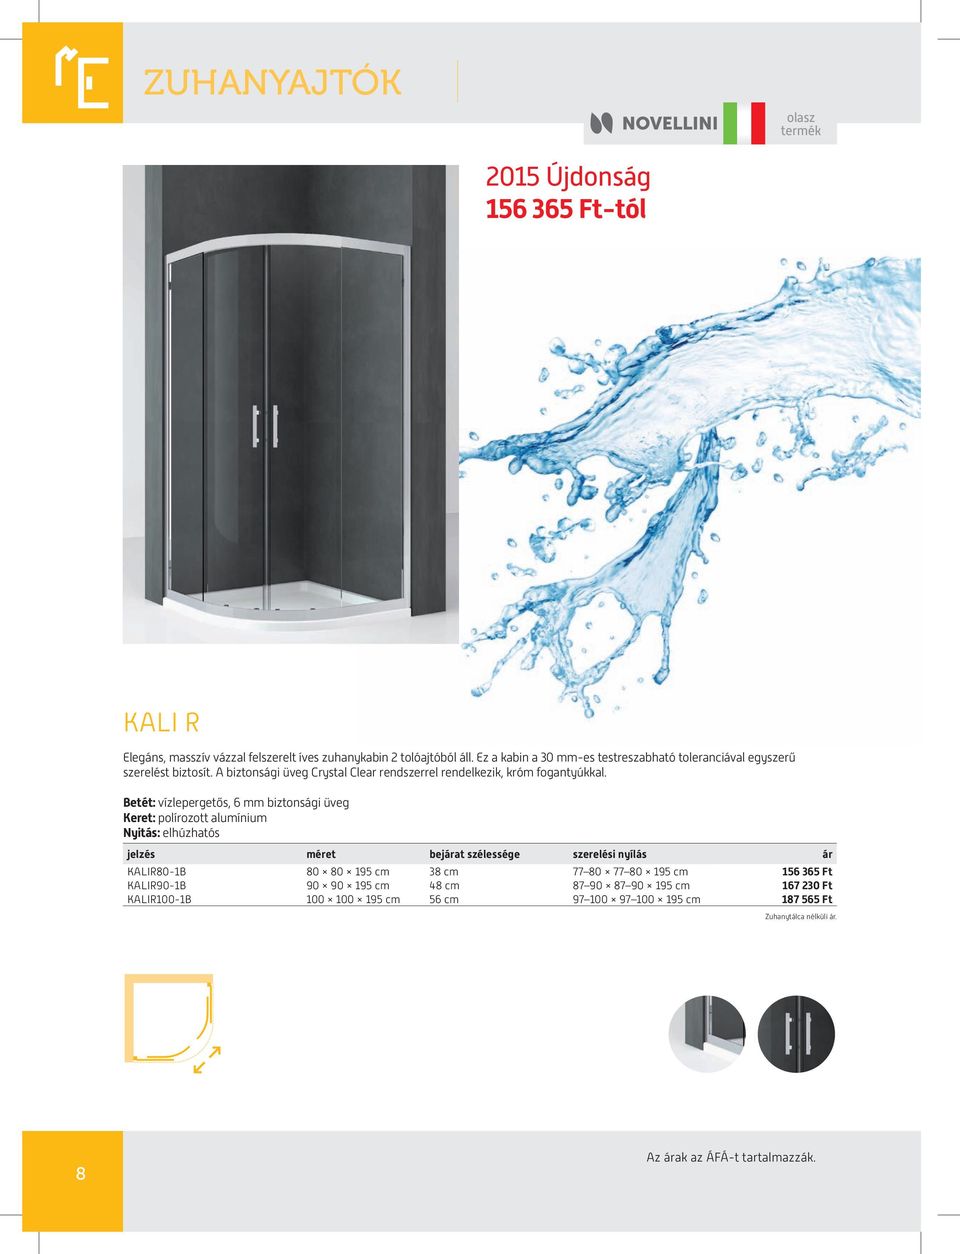 Betét: vízlepergetős, 6 mm biztonsági üveg Keret: polírozott alumínium Nyitás: elhúzhatós jelzés méret bejárat szélessége szerelési nyílás ár KALIR80-1B 80 80 195 cm